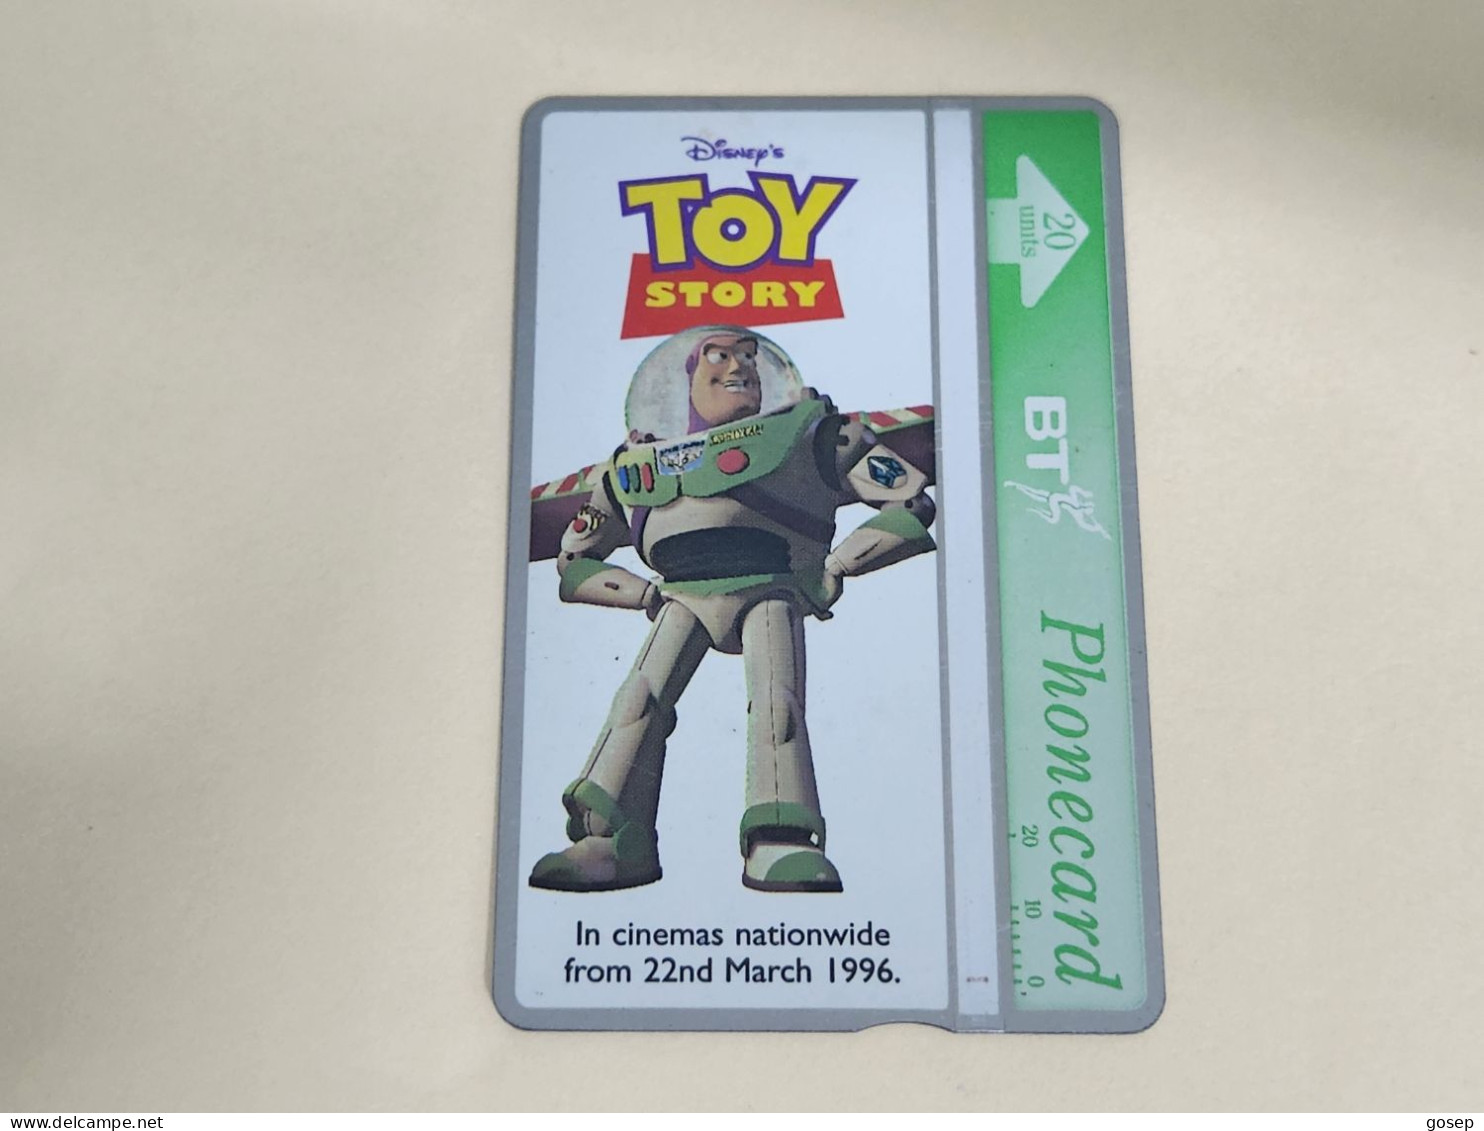 United Kingdom-(BTA150)Disney's Toy-3 BUZZ-(256)(20units)(623B37095)price Cataloge 3.00£ Used+1card Prepiad Free - BT Edición Publicitaria